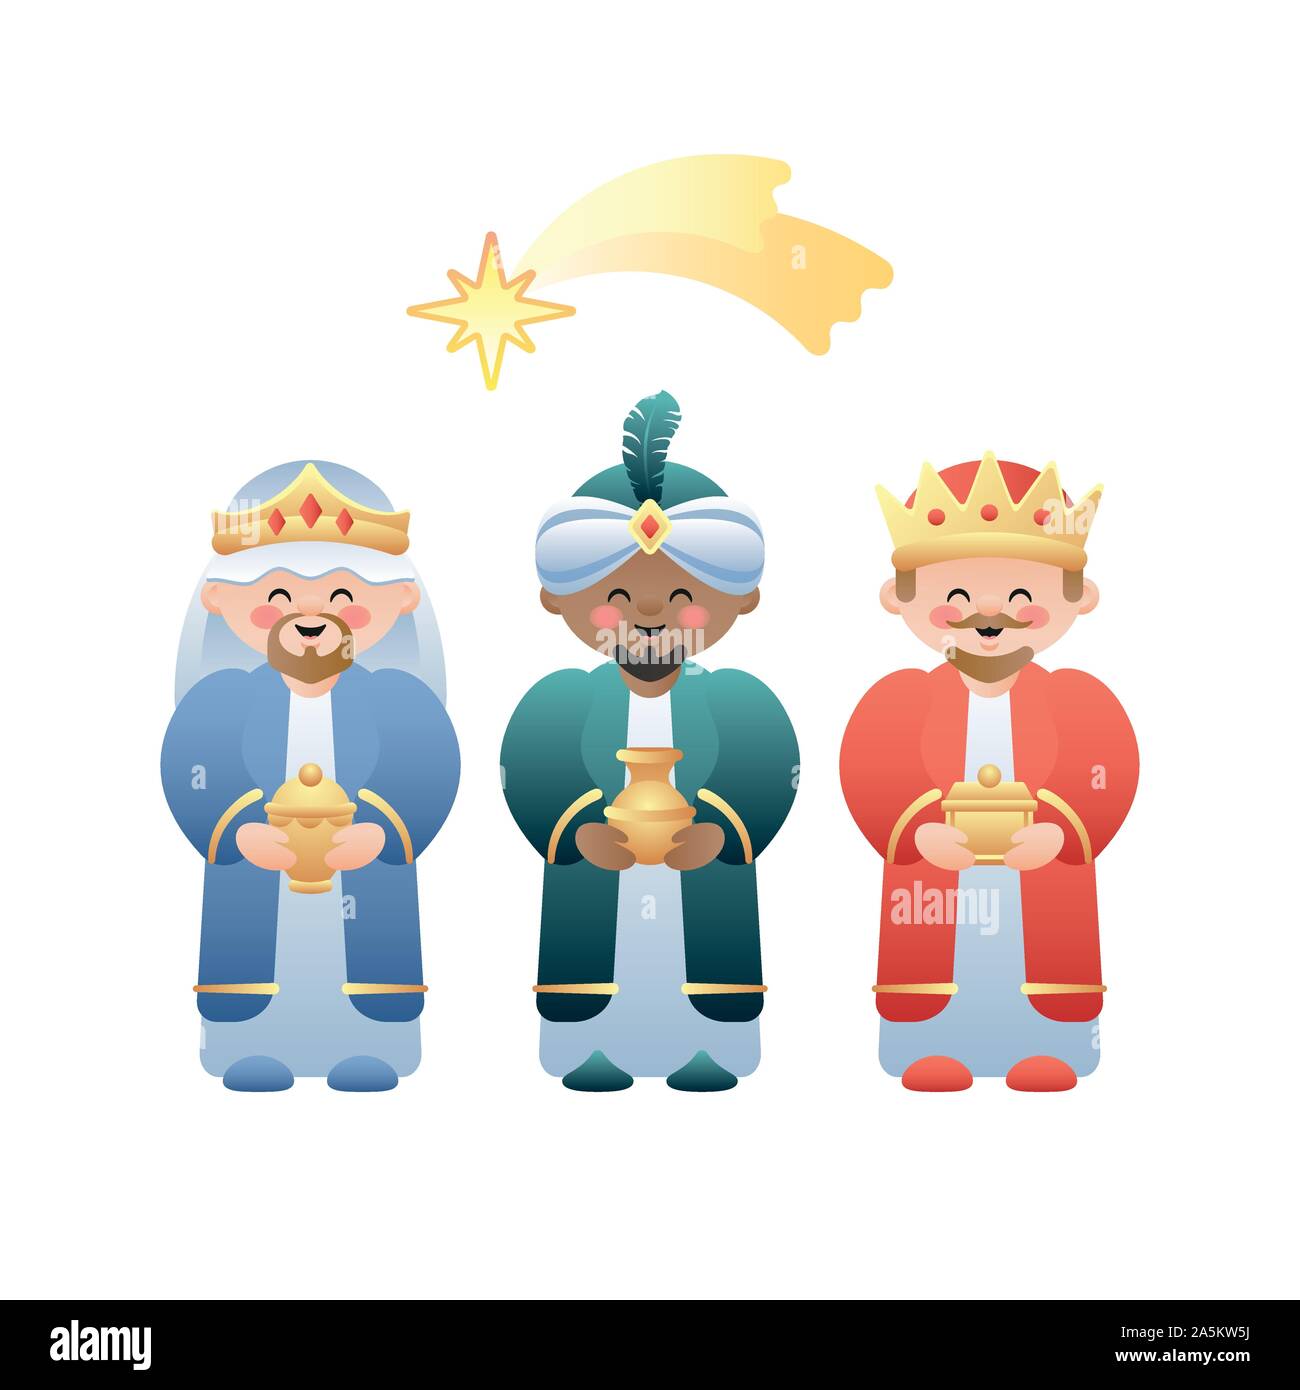 Weihnachten Abbildung. Die Drei Könige oder Drei Weisen und das Bethlehem Shooting Star auf Weiß. Niedliche Comicfiguren. Vector Illustration. Stock Vektor